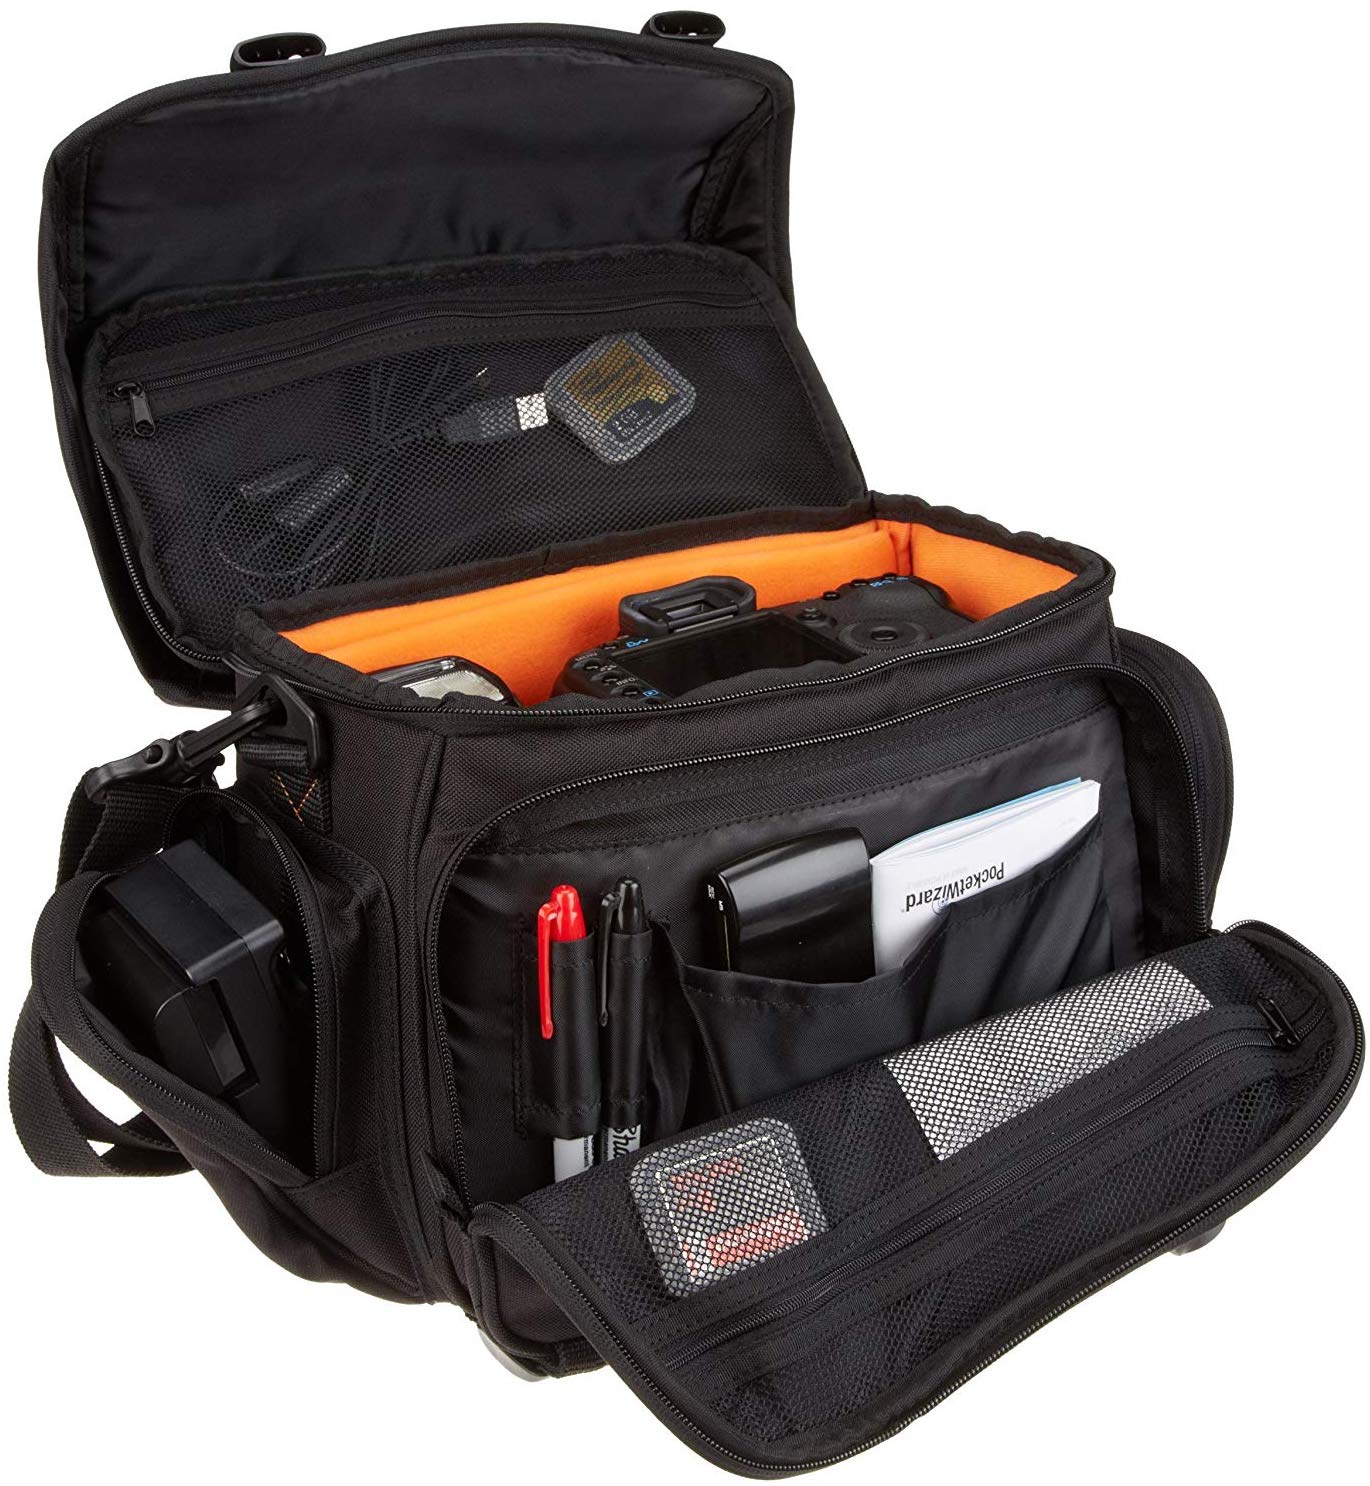 Amazon Basics Large Camera Bag